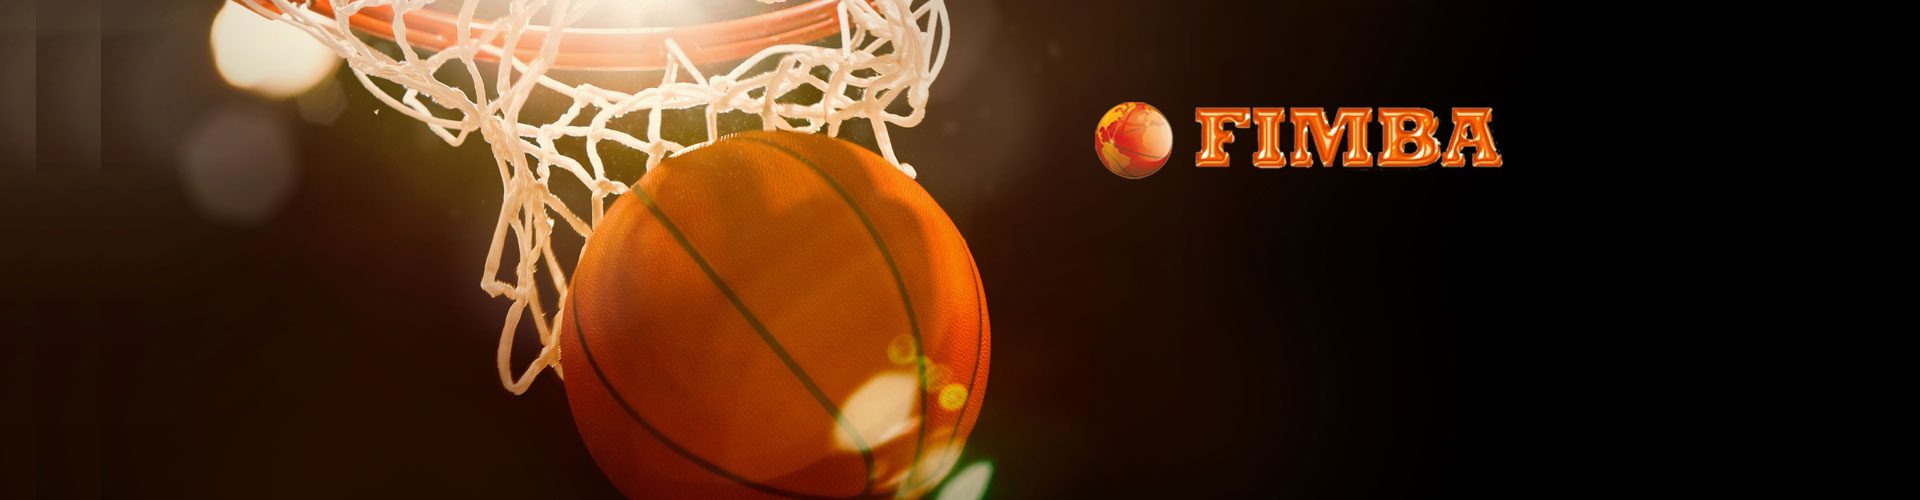 5° giorno Mondiali di Basket Montecatini Terme – tutte le foto